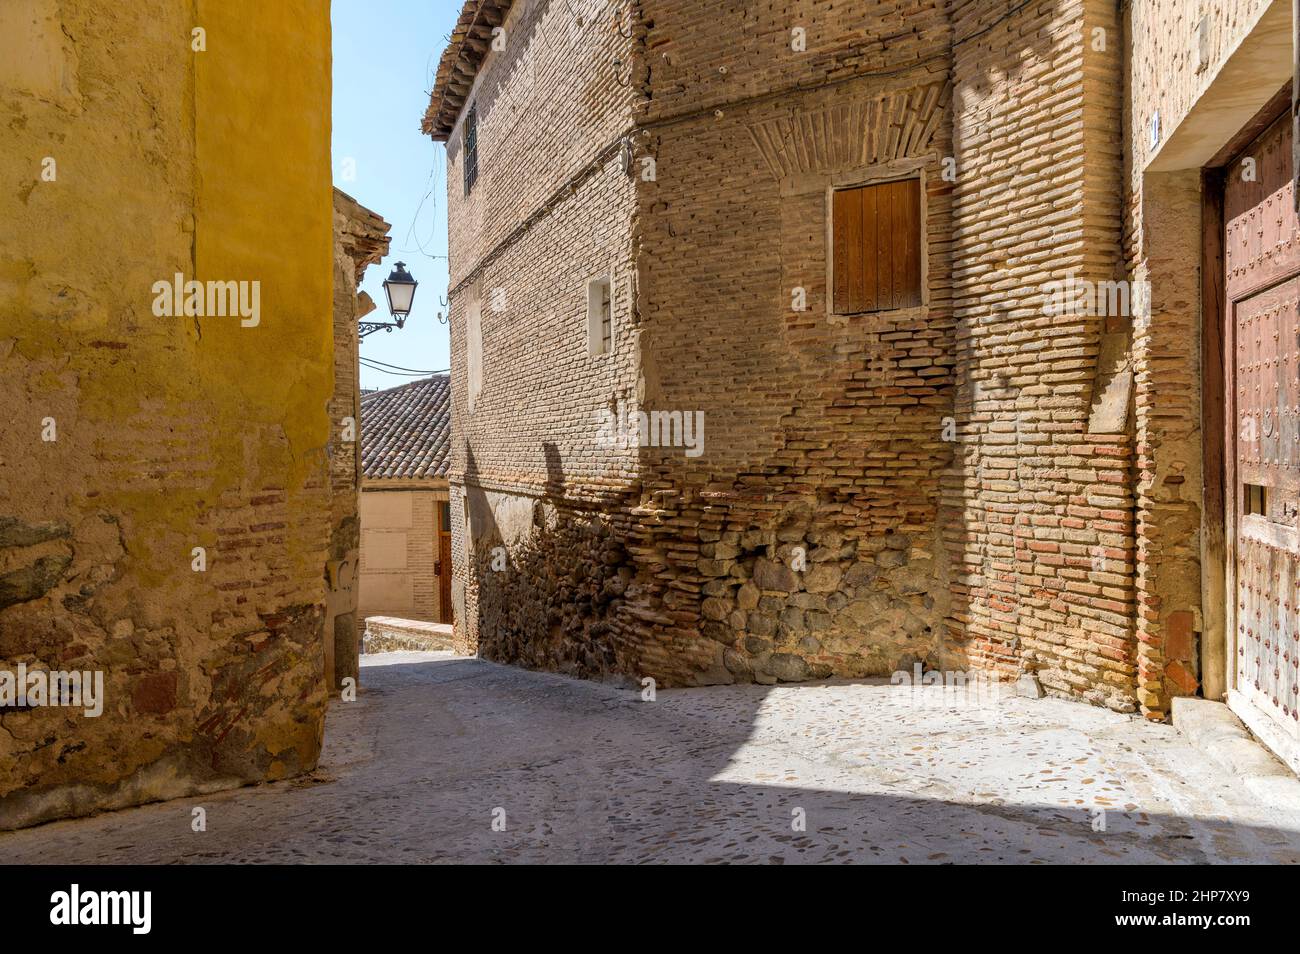 Old Street - après-midi, la lumière du soleil brille dans une rue étroite entourée de vieilles briques et de bâtiments en pierre dans la ville historique de Tolède, en Espagne. Banque D'Images